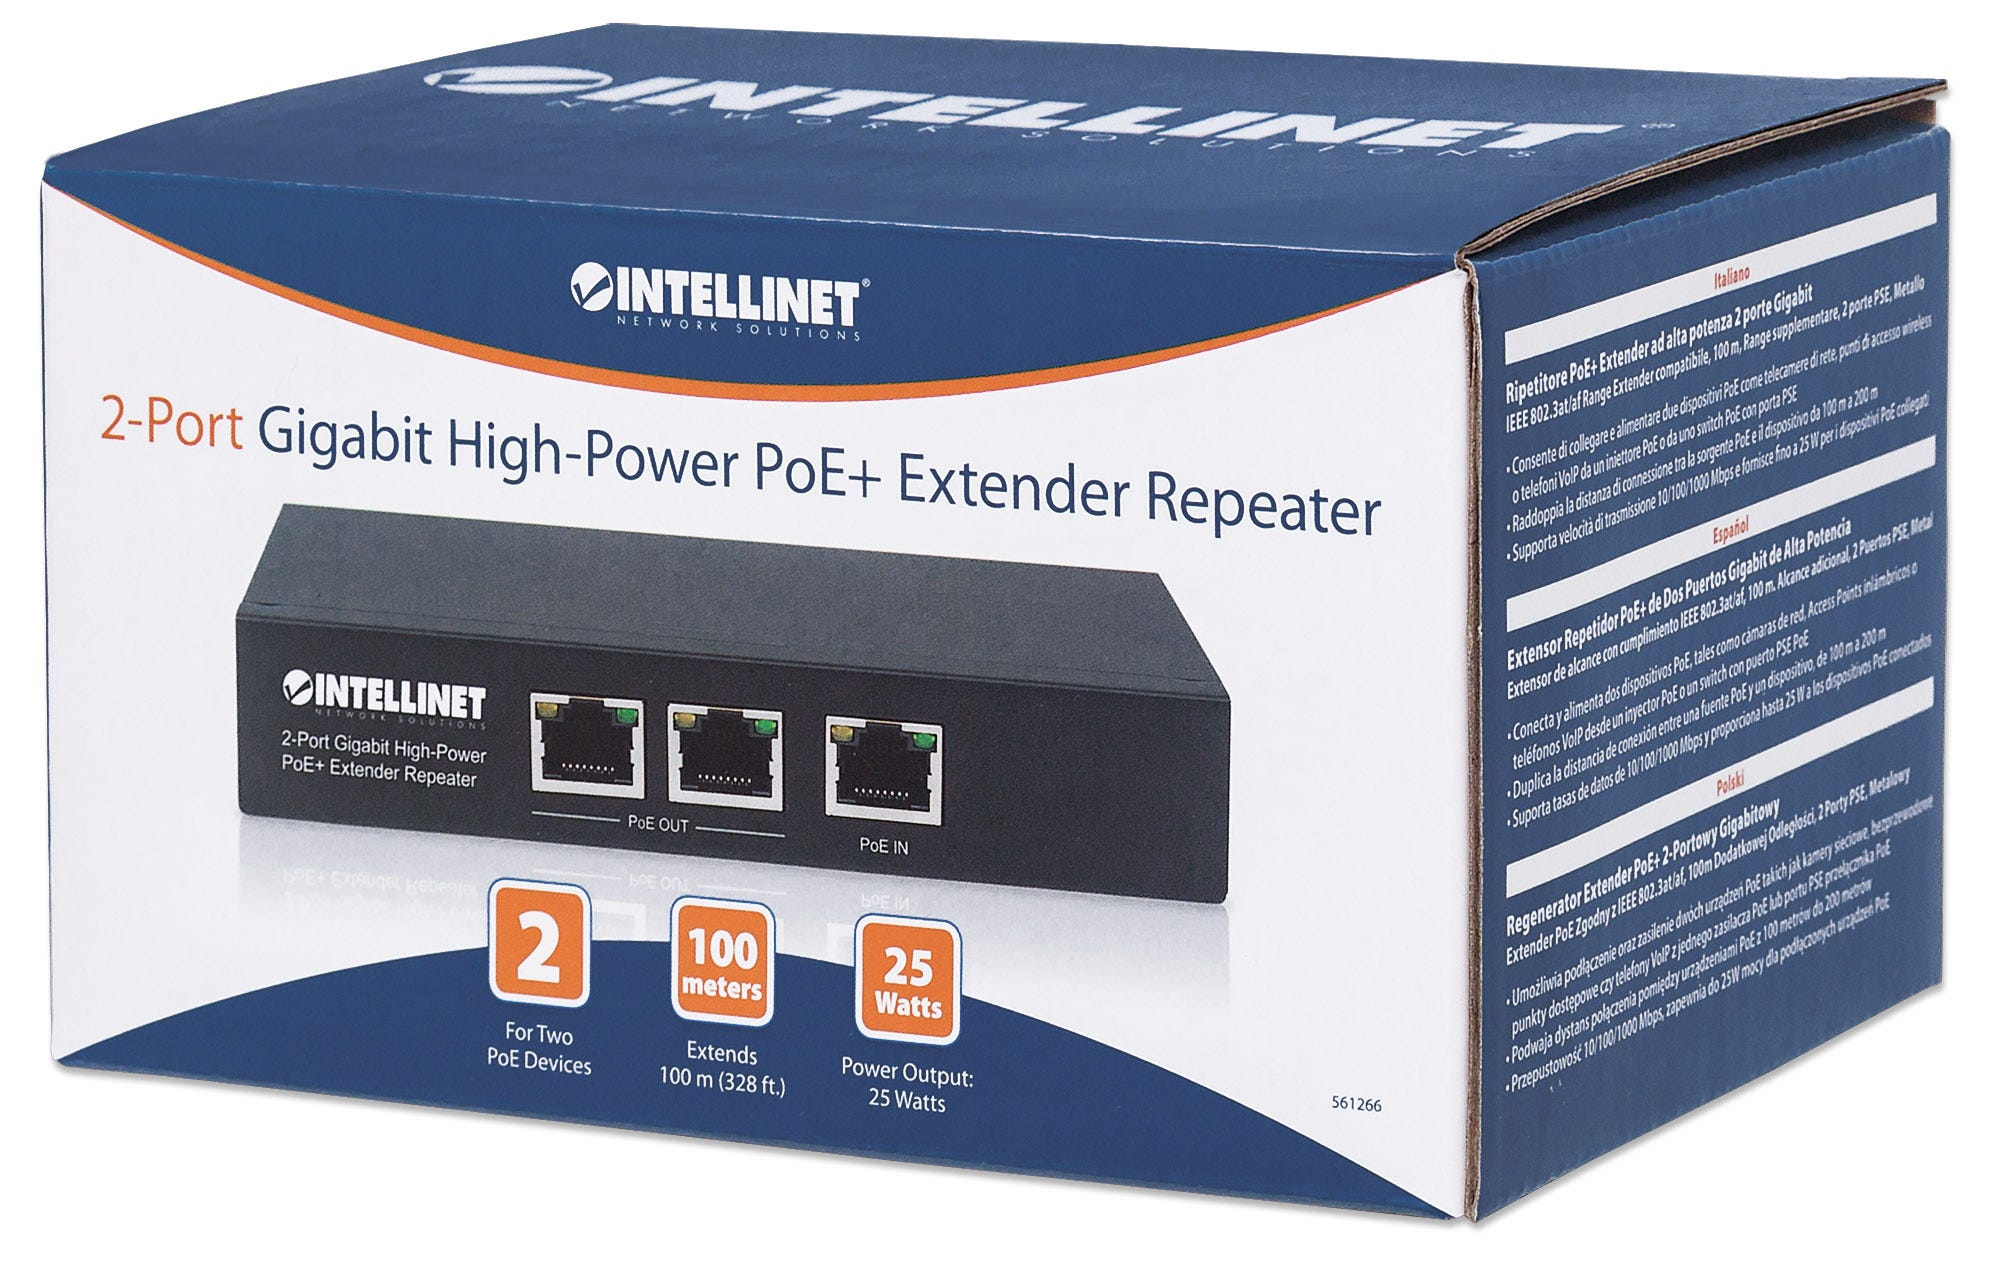 Intellinet 2-Port Gigabit High-Power PoE+ Extender, IEEE 802.3at/af PoE+/PoE, verlängert die Reichweite einer PoE-Verbindung um zusätzliche 100 Meter, 2 PSE-Ports, Metall